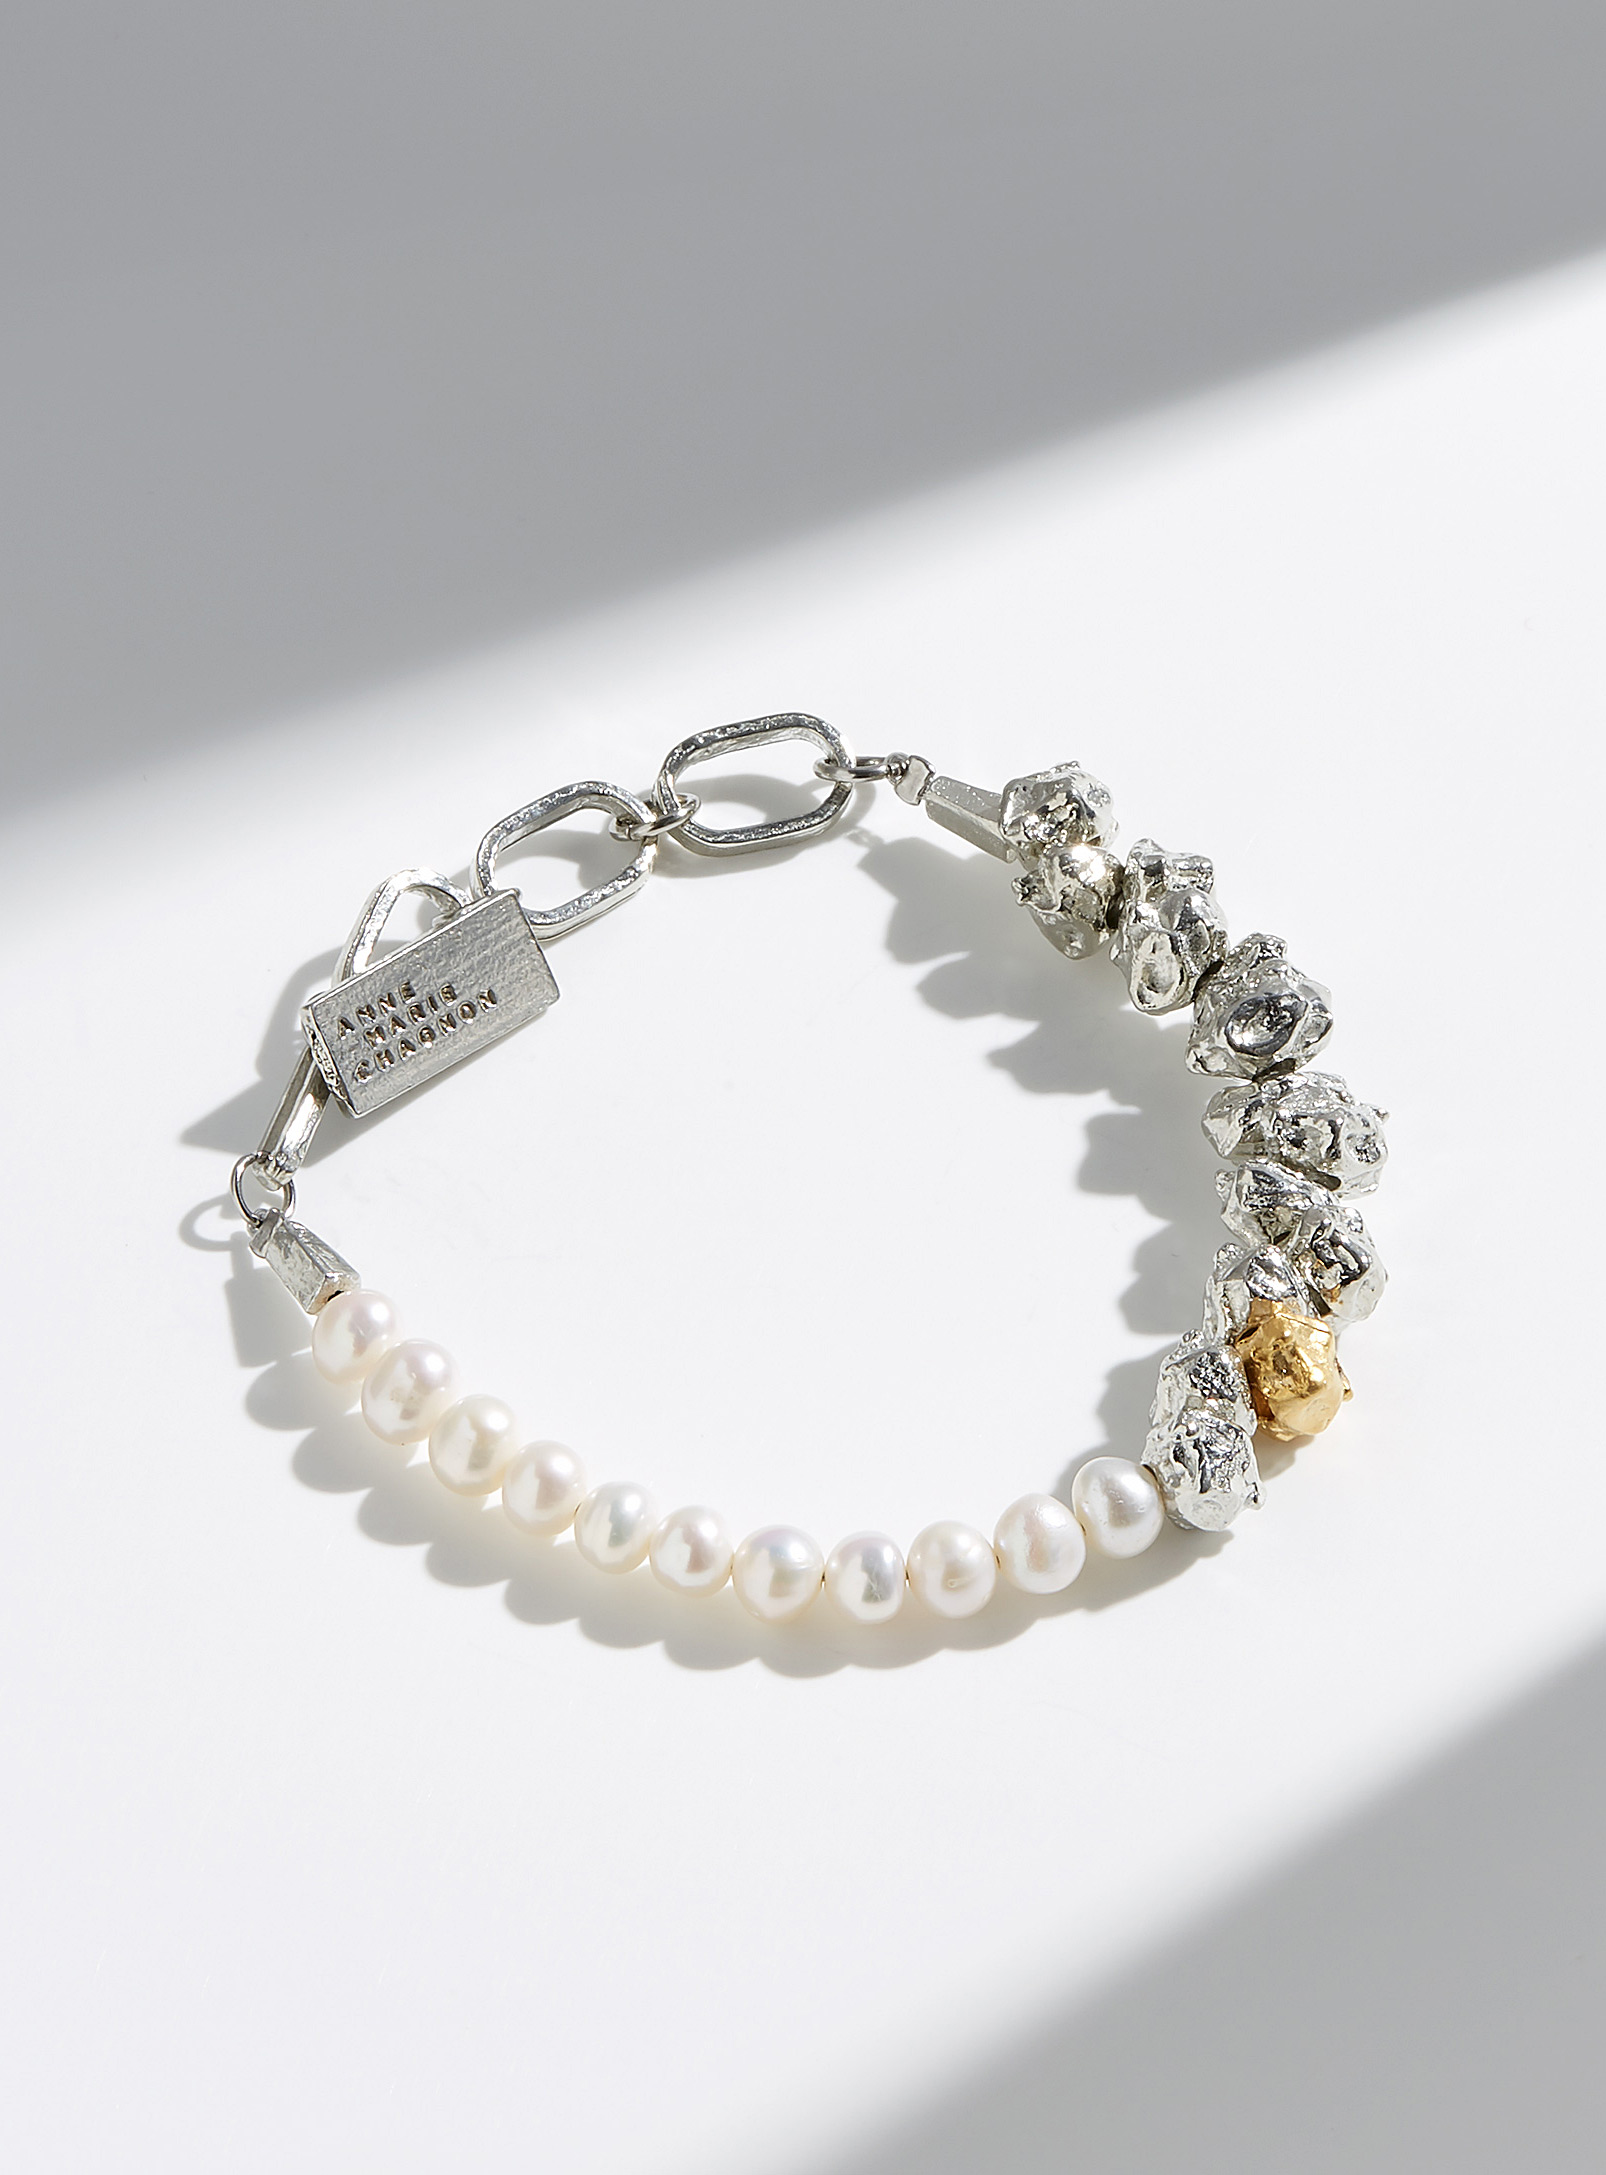 Anne-Marie Chagnon - Kanji bracelet